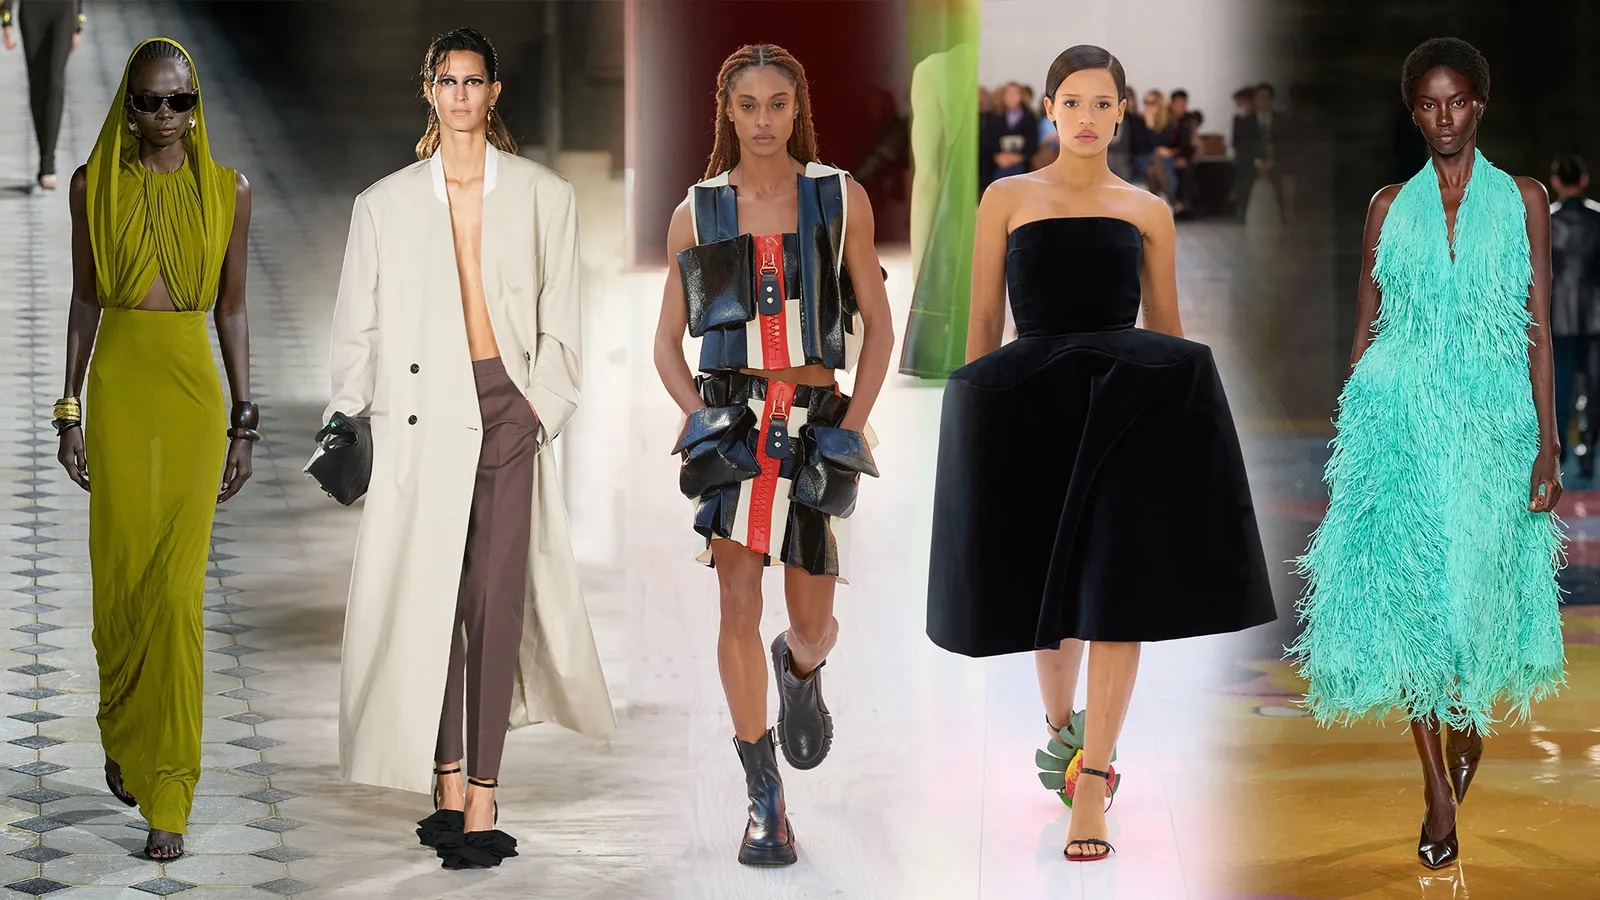 Dit zijn de 10 grootste modetrends van lente/zomer 2023 - TrendRadars